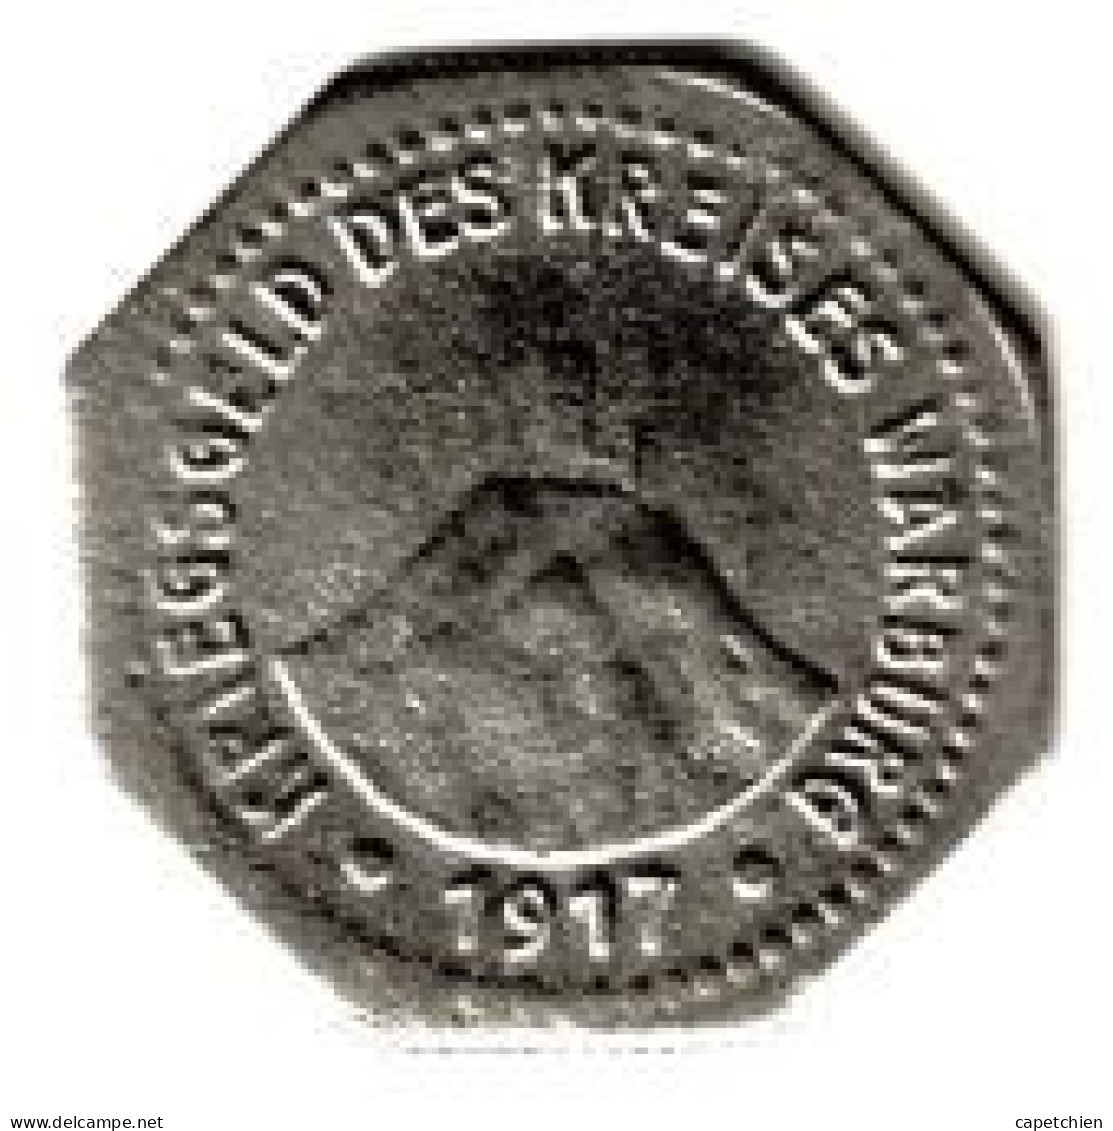 ALLEMAGNE / NOTGELD / KREISES WARBURG  / 10 PFENNIG / 1917 / FER / 20.7 Mm  / 2.57 G / ETAT TTB - Noodgeld